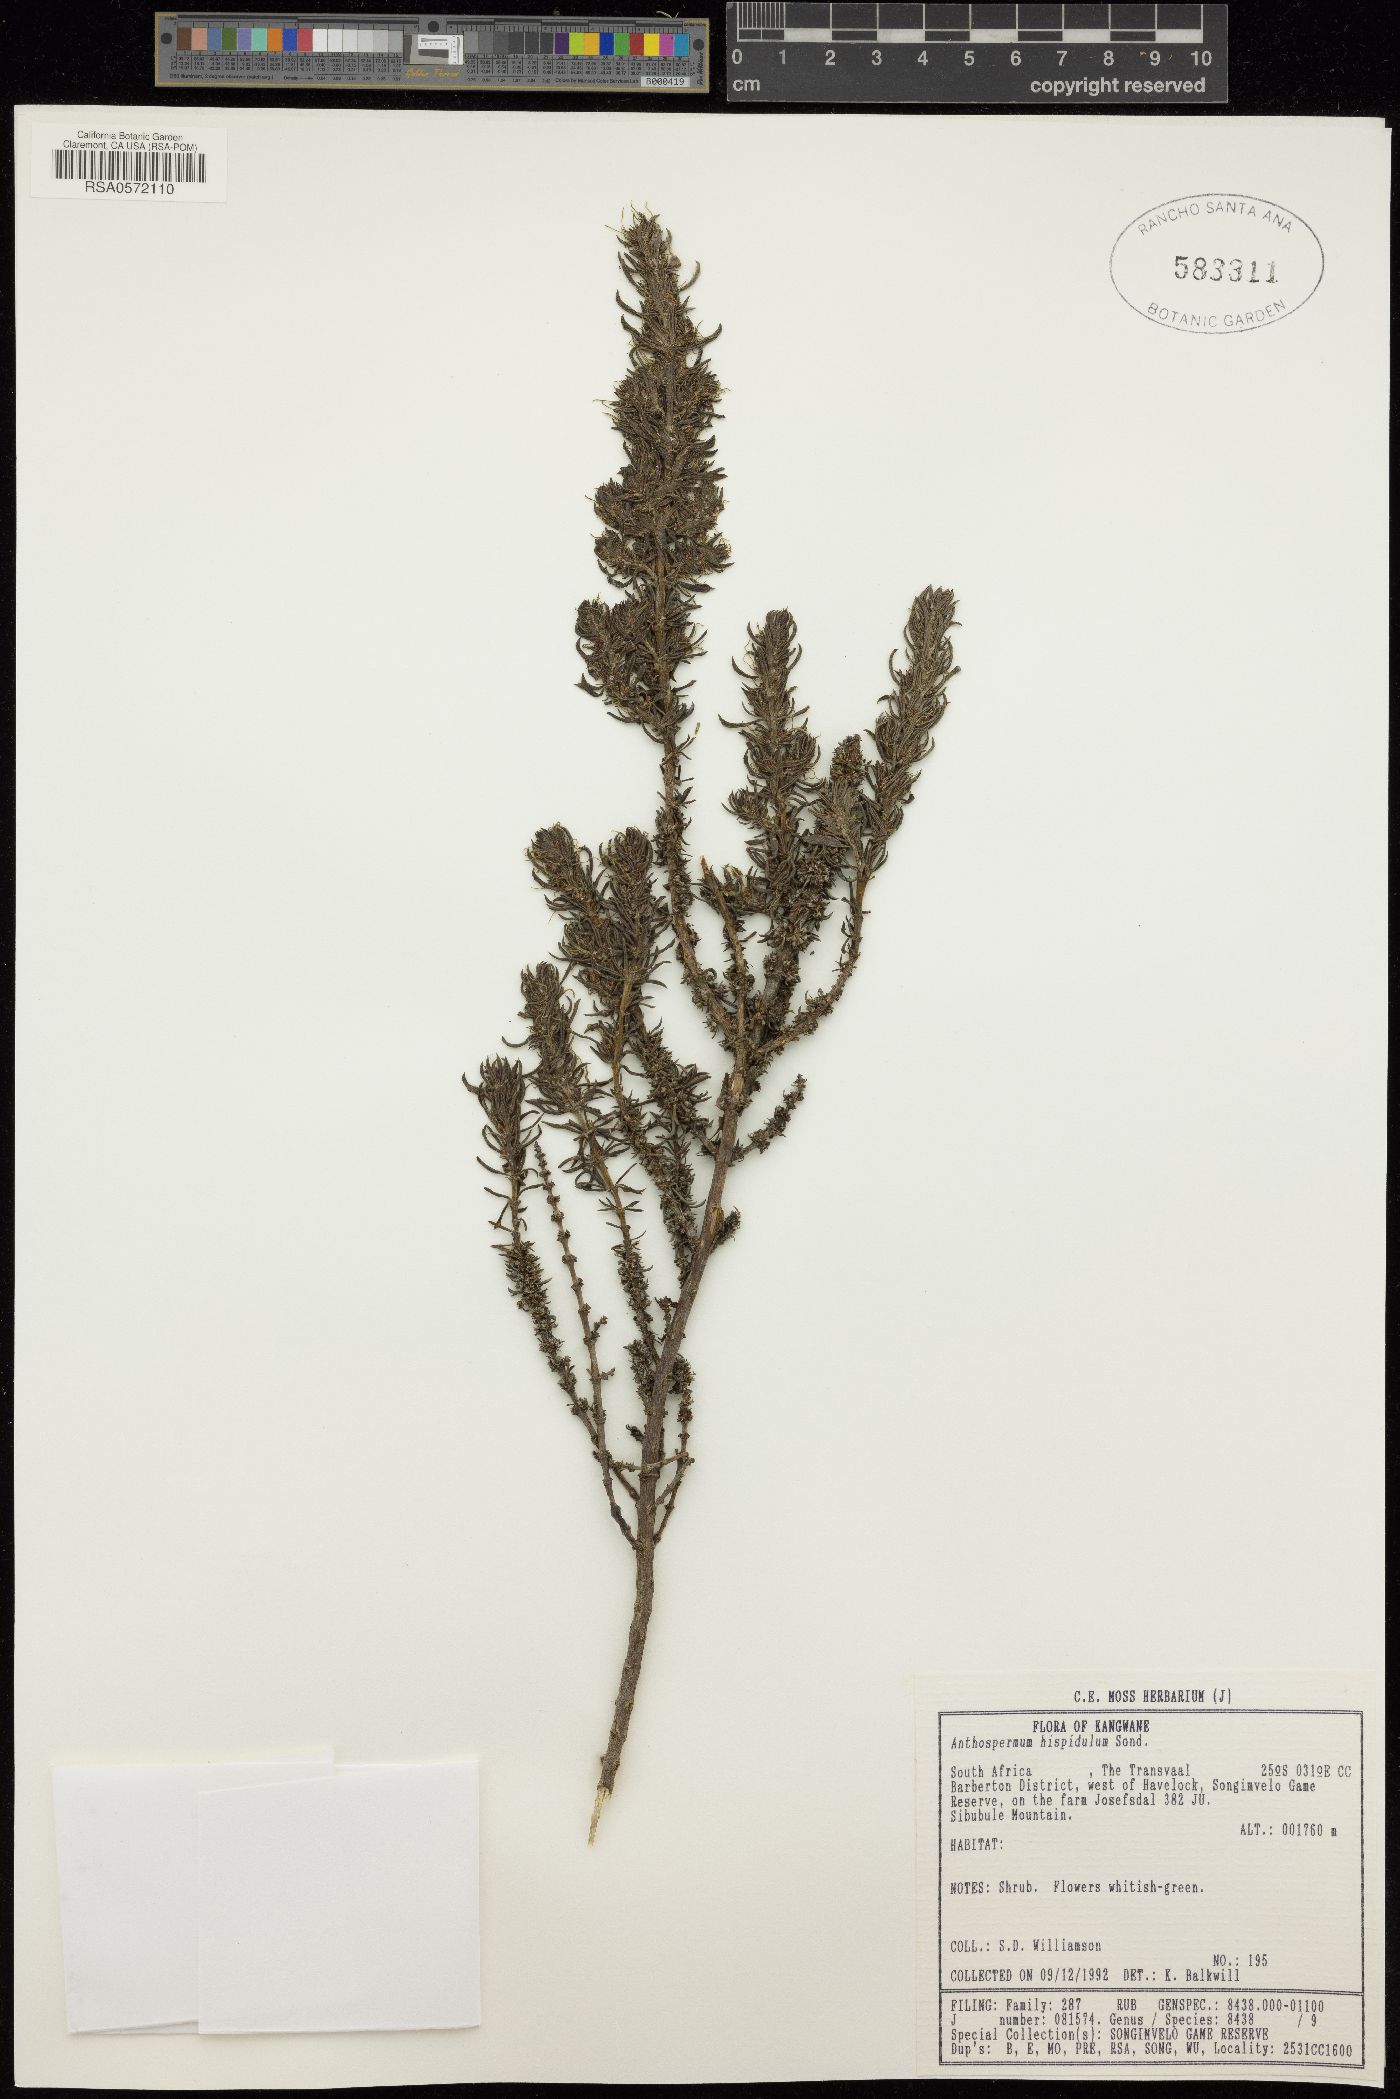 Anthospermum hispidulum image